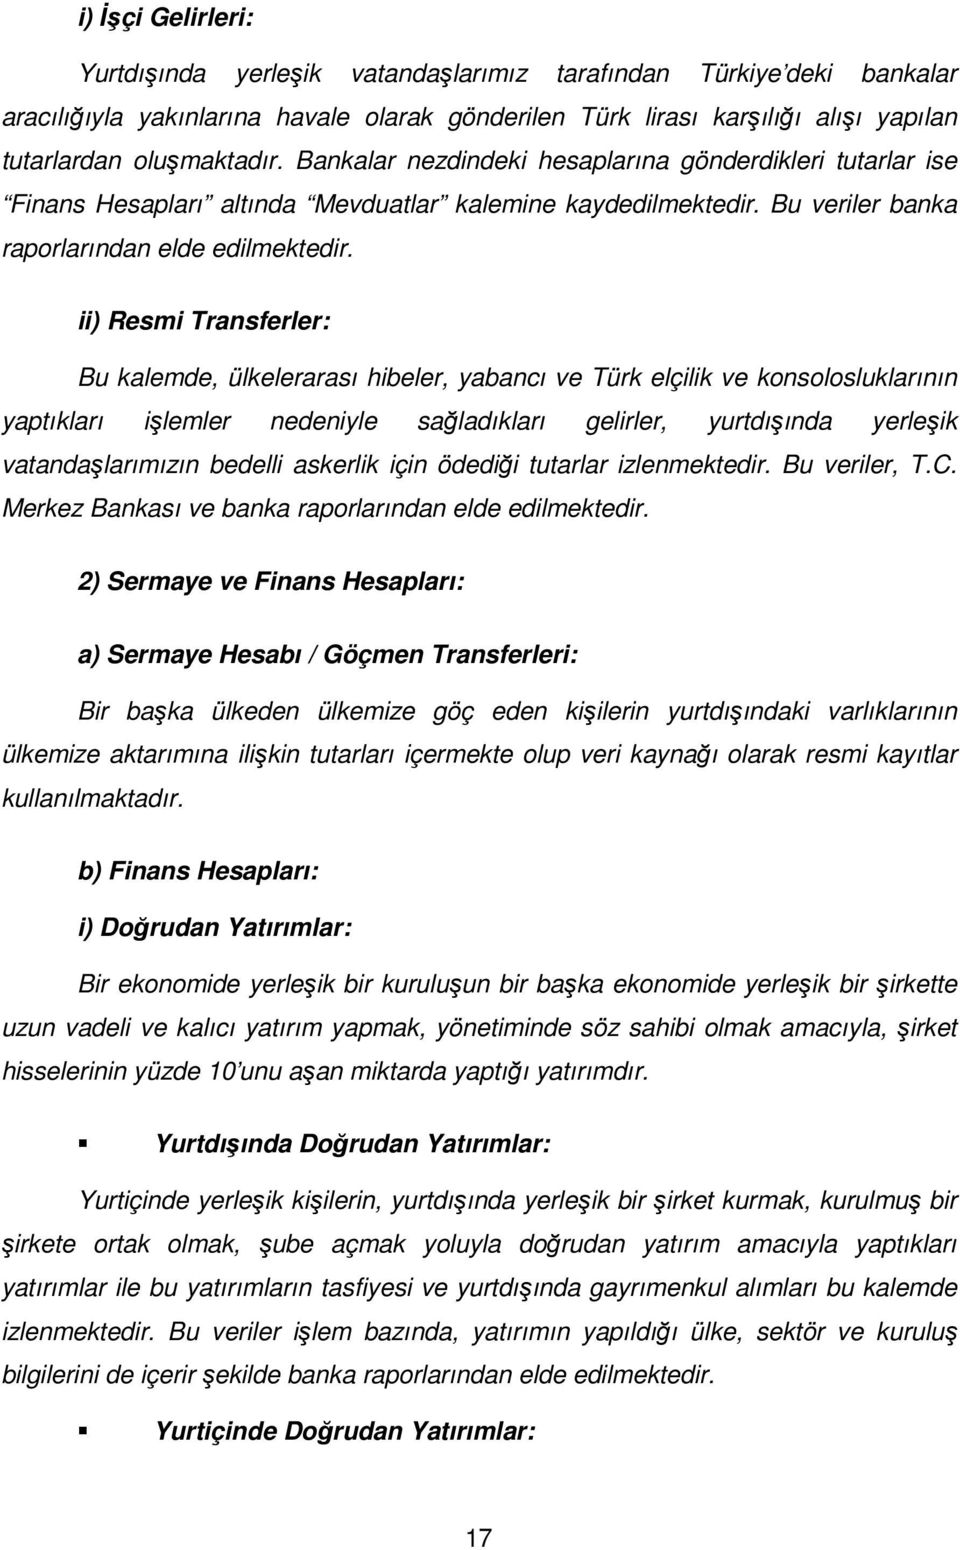 ii) Resmi Transferler: Bu kalemde, ülkelerarası hibeler, yabancı ve Türk elçilik ve konsolosluklarının yaptıkları işlemler nedeniyle sağladıkları gelirler, yurtdışında yerleşik vatandaşlarımızın